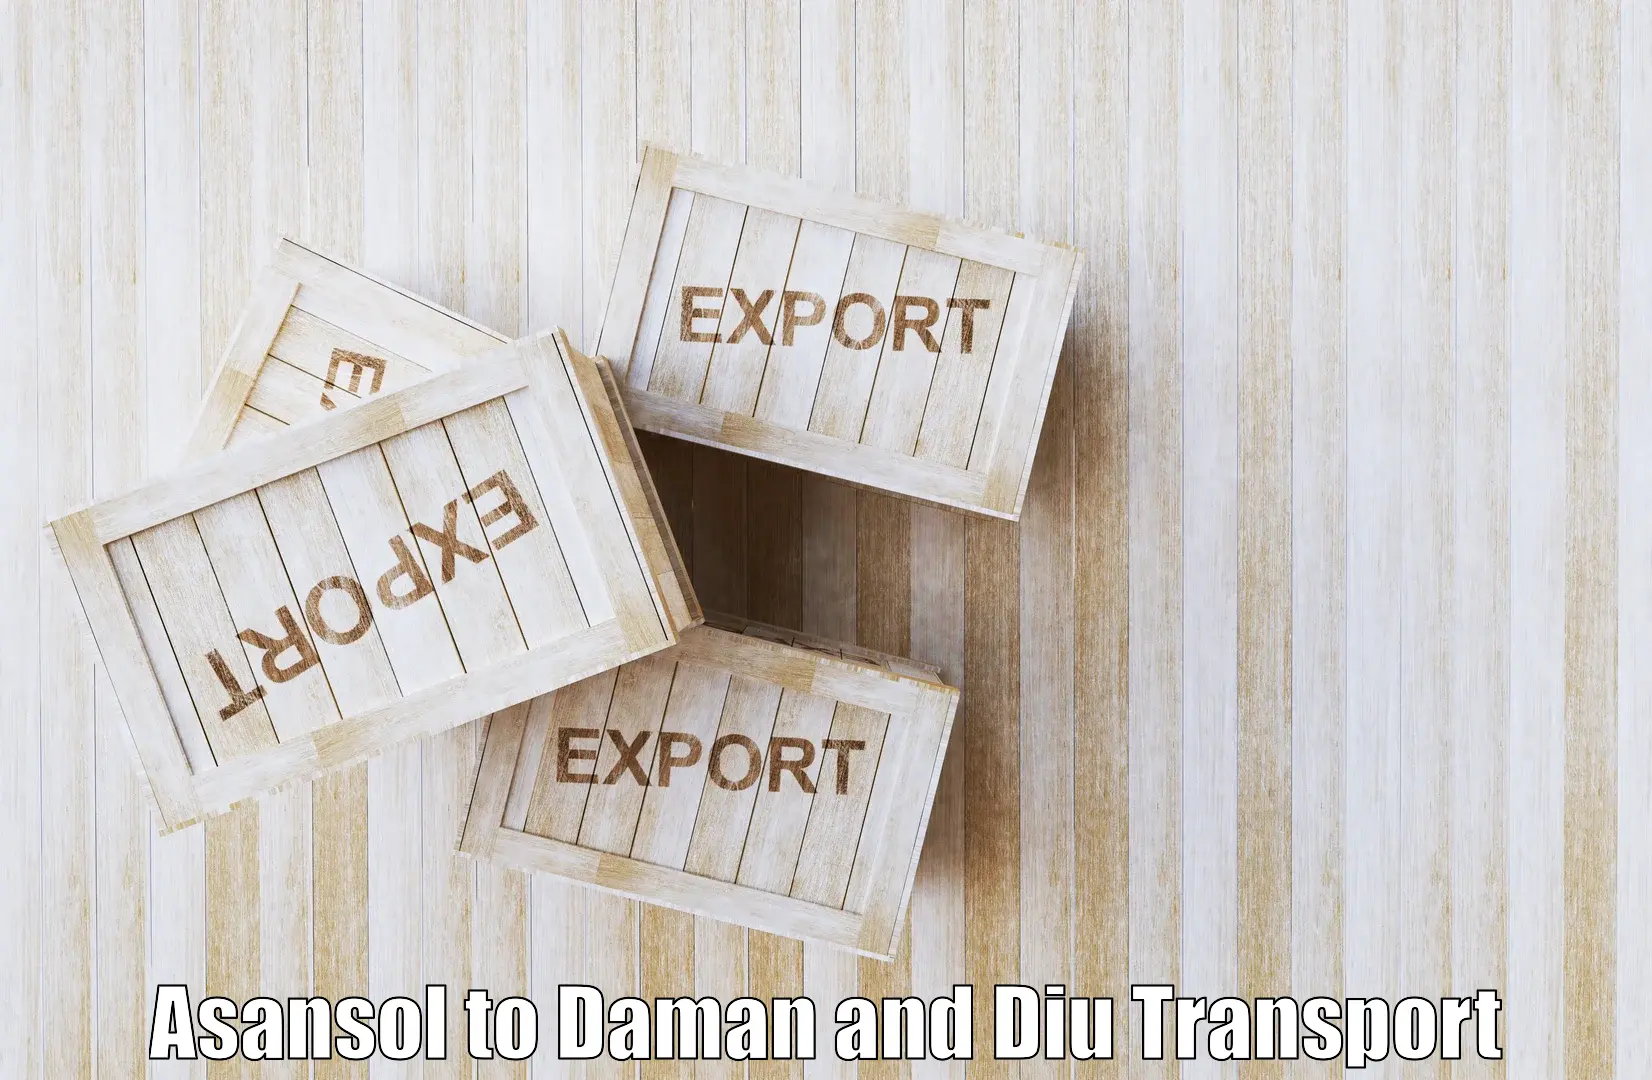 Interstate goods transport Asansol to Daman